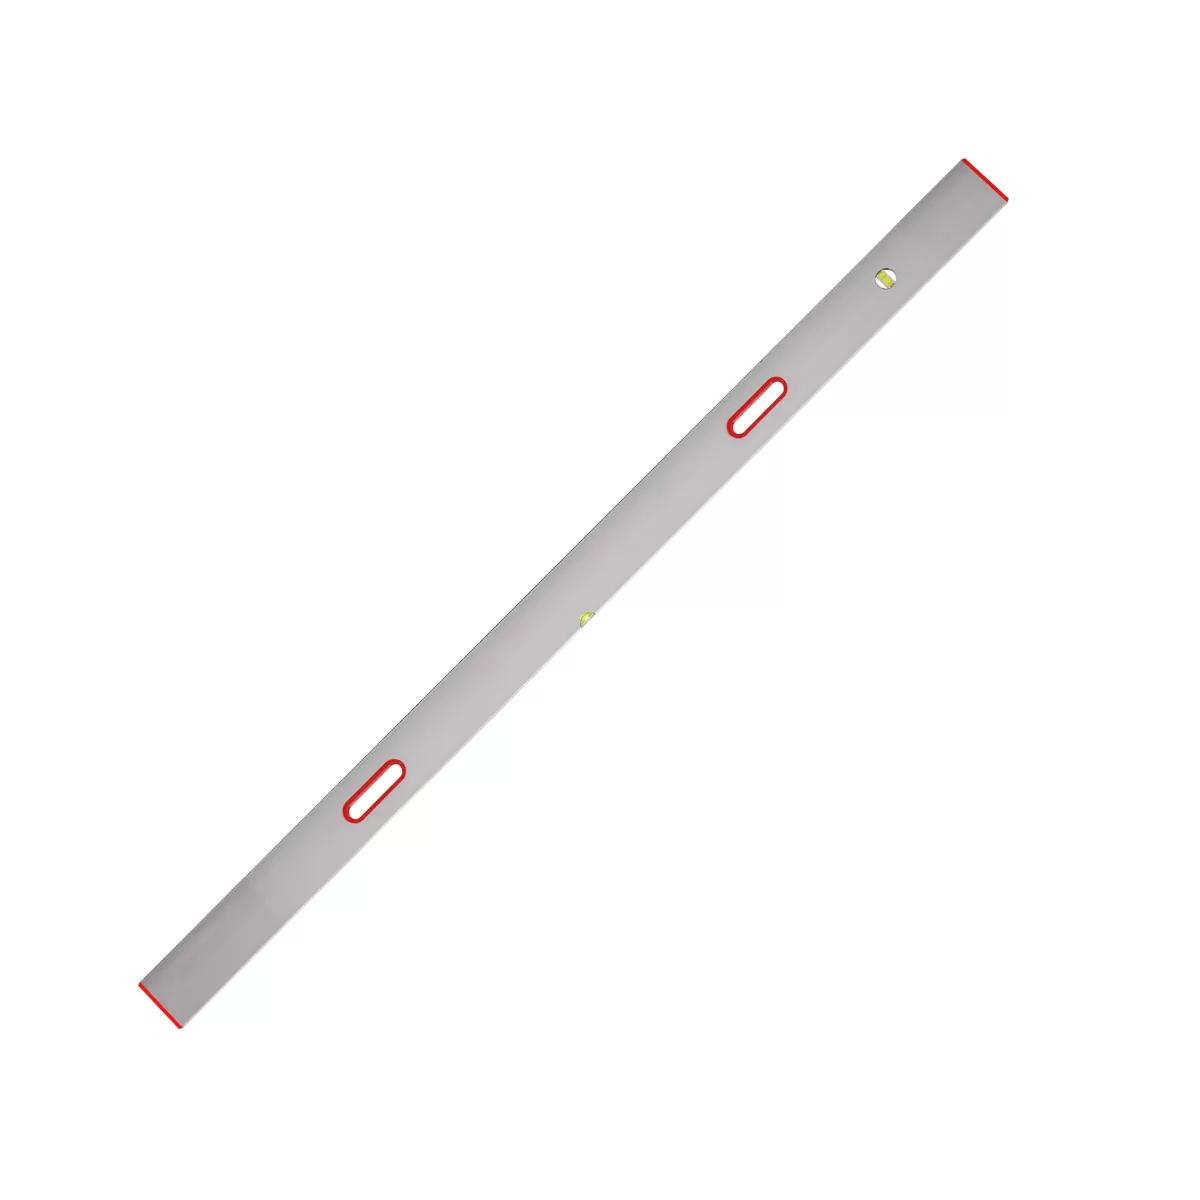 New type aluminium bar 2 axis, 2m 